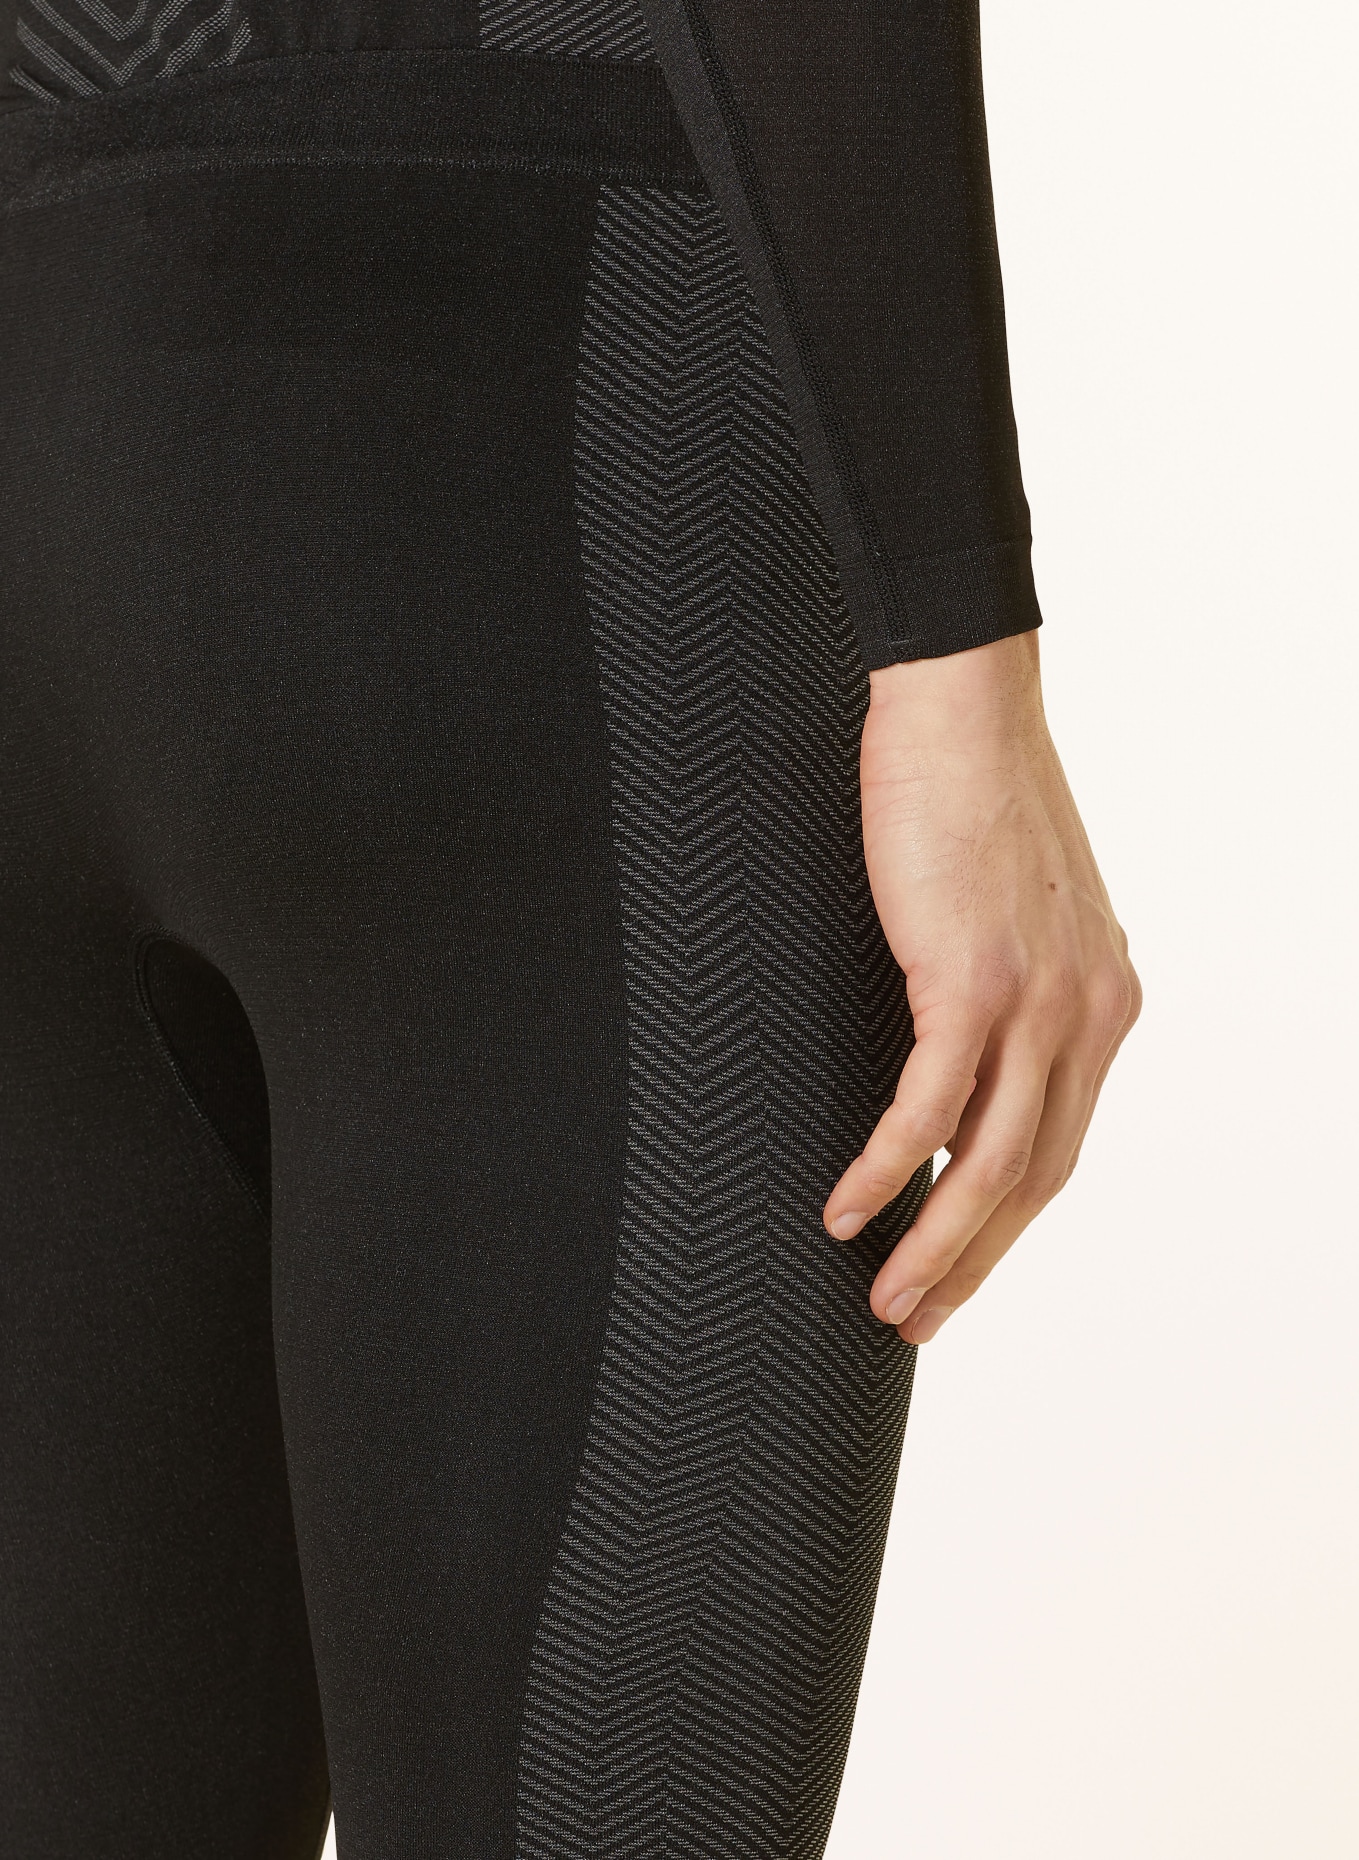 me°ru' Functional underwear trousers ANVIK, Color: GRAY/ BLACK (Image 6)